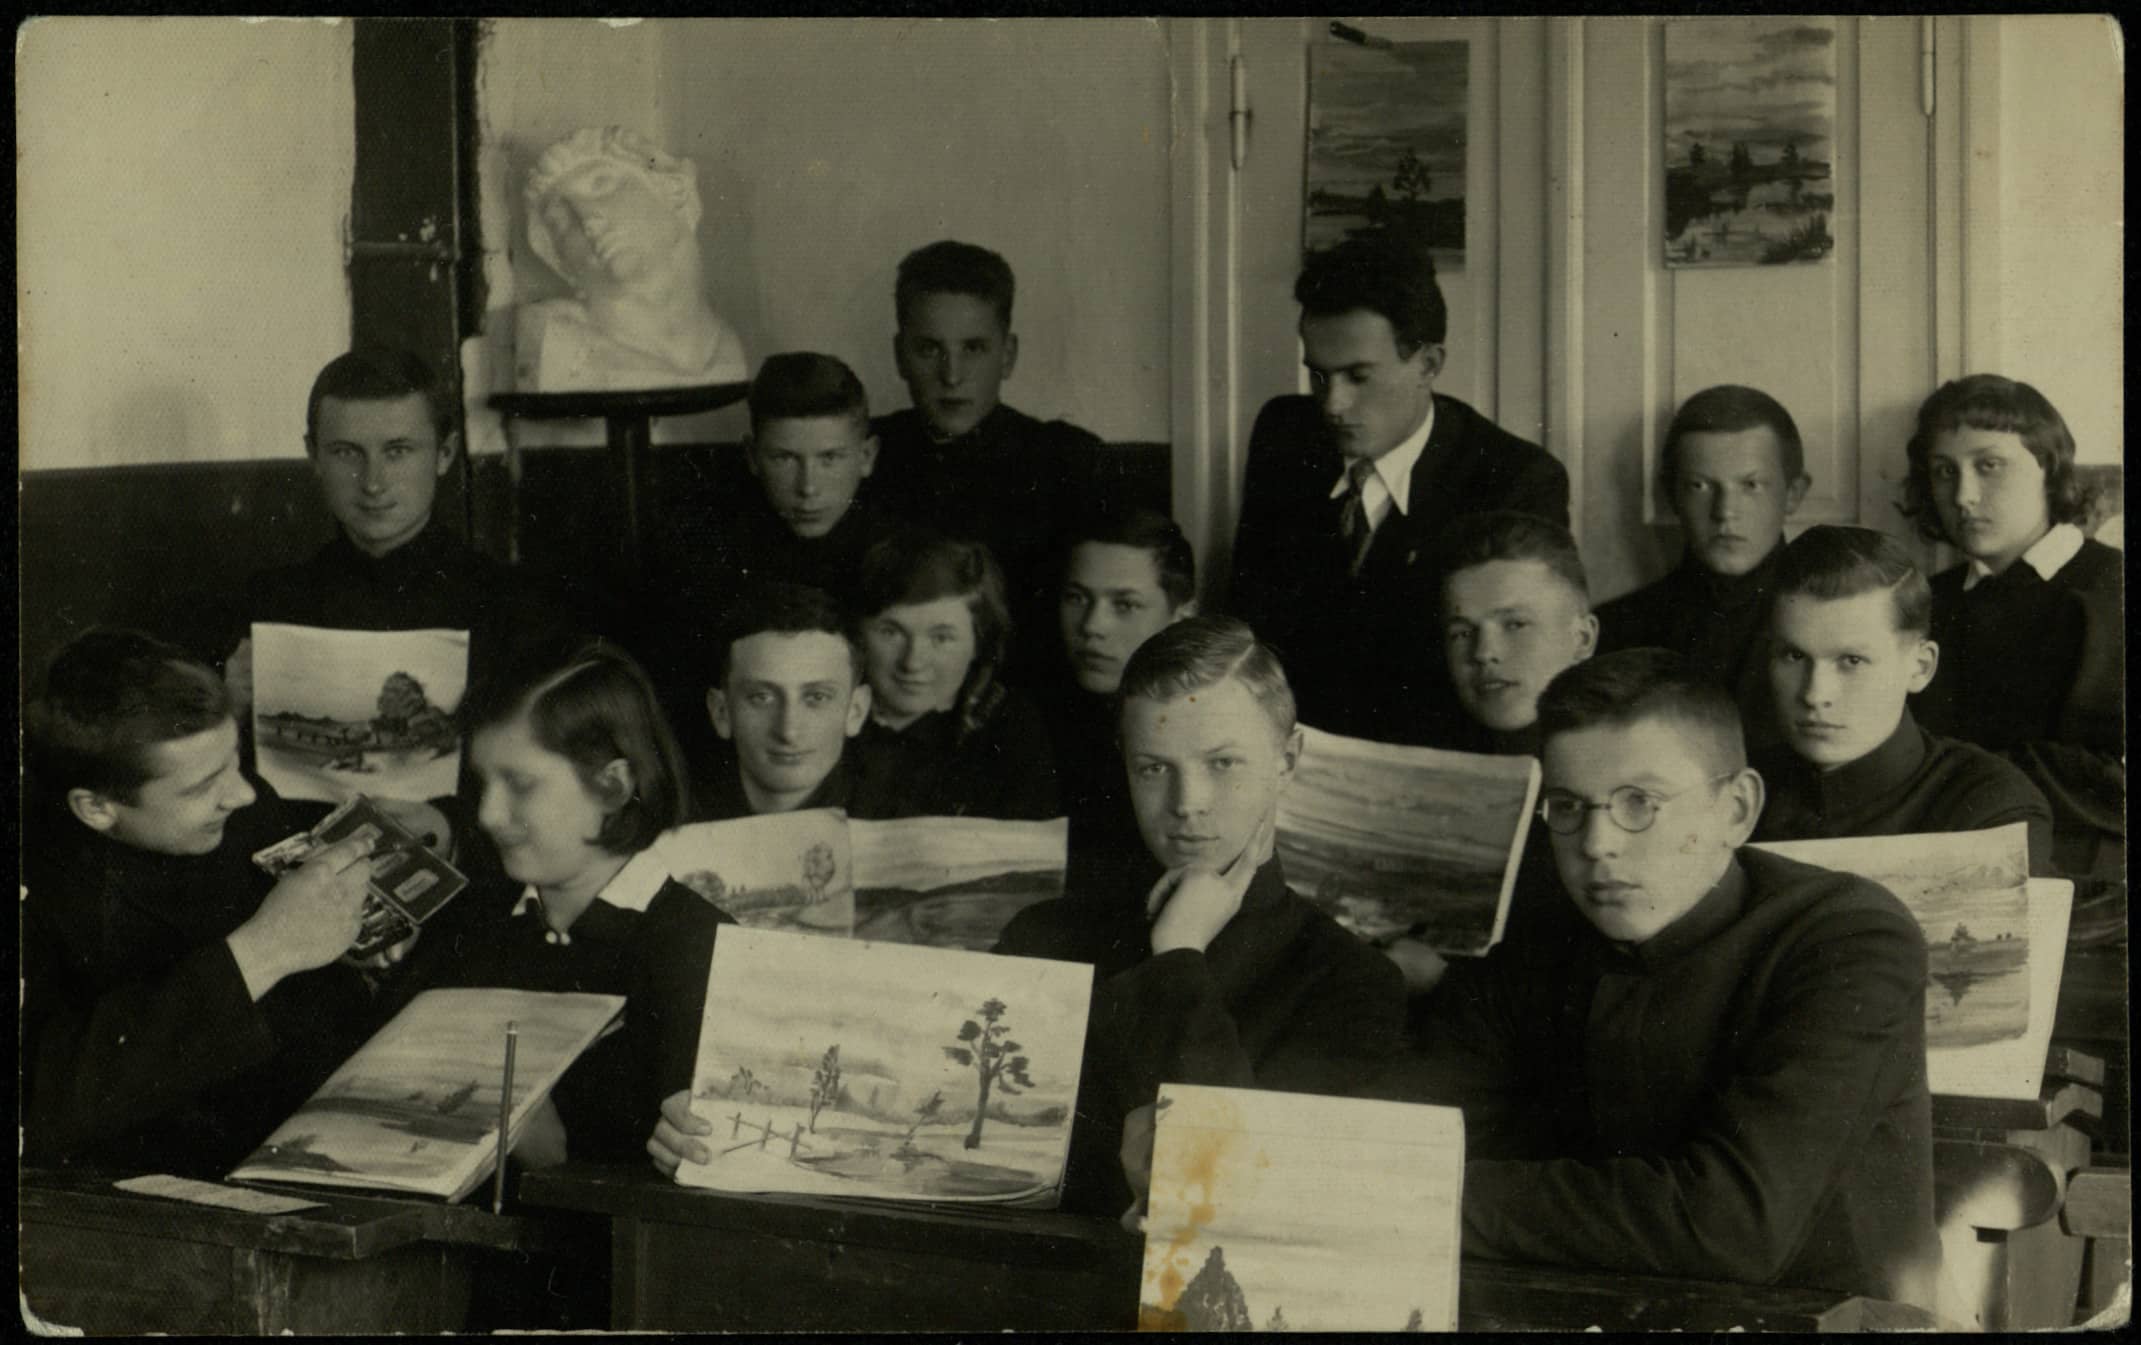 Juliaus Šidagio brolio Petro Šidagio klasė su piešimo mokytoju Č. Jonušu. Antroje eilėje antras iš dešinės P. Šidagis. Apie 1933 m. 